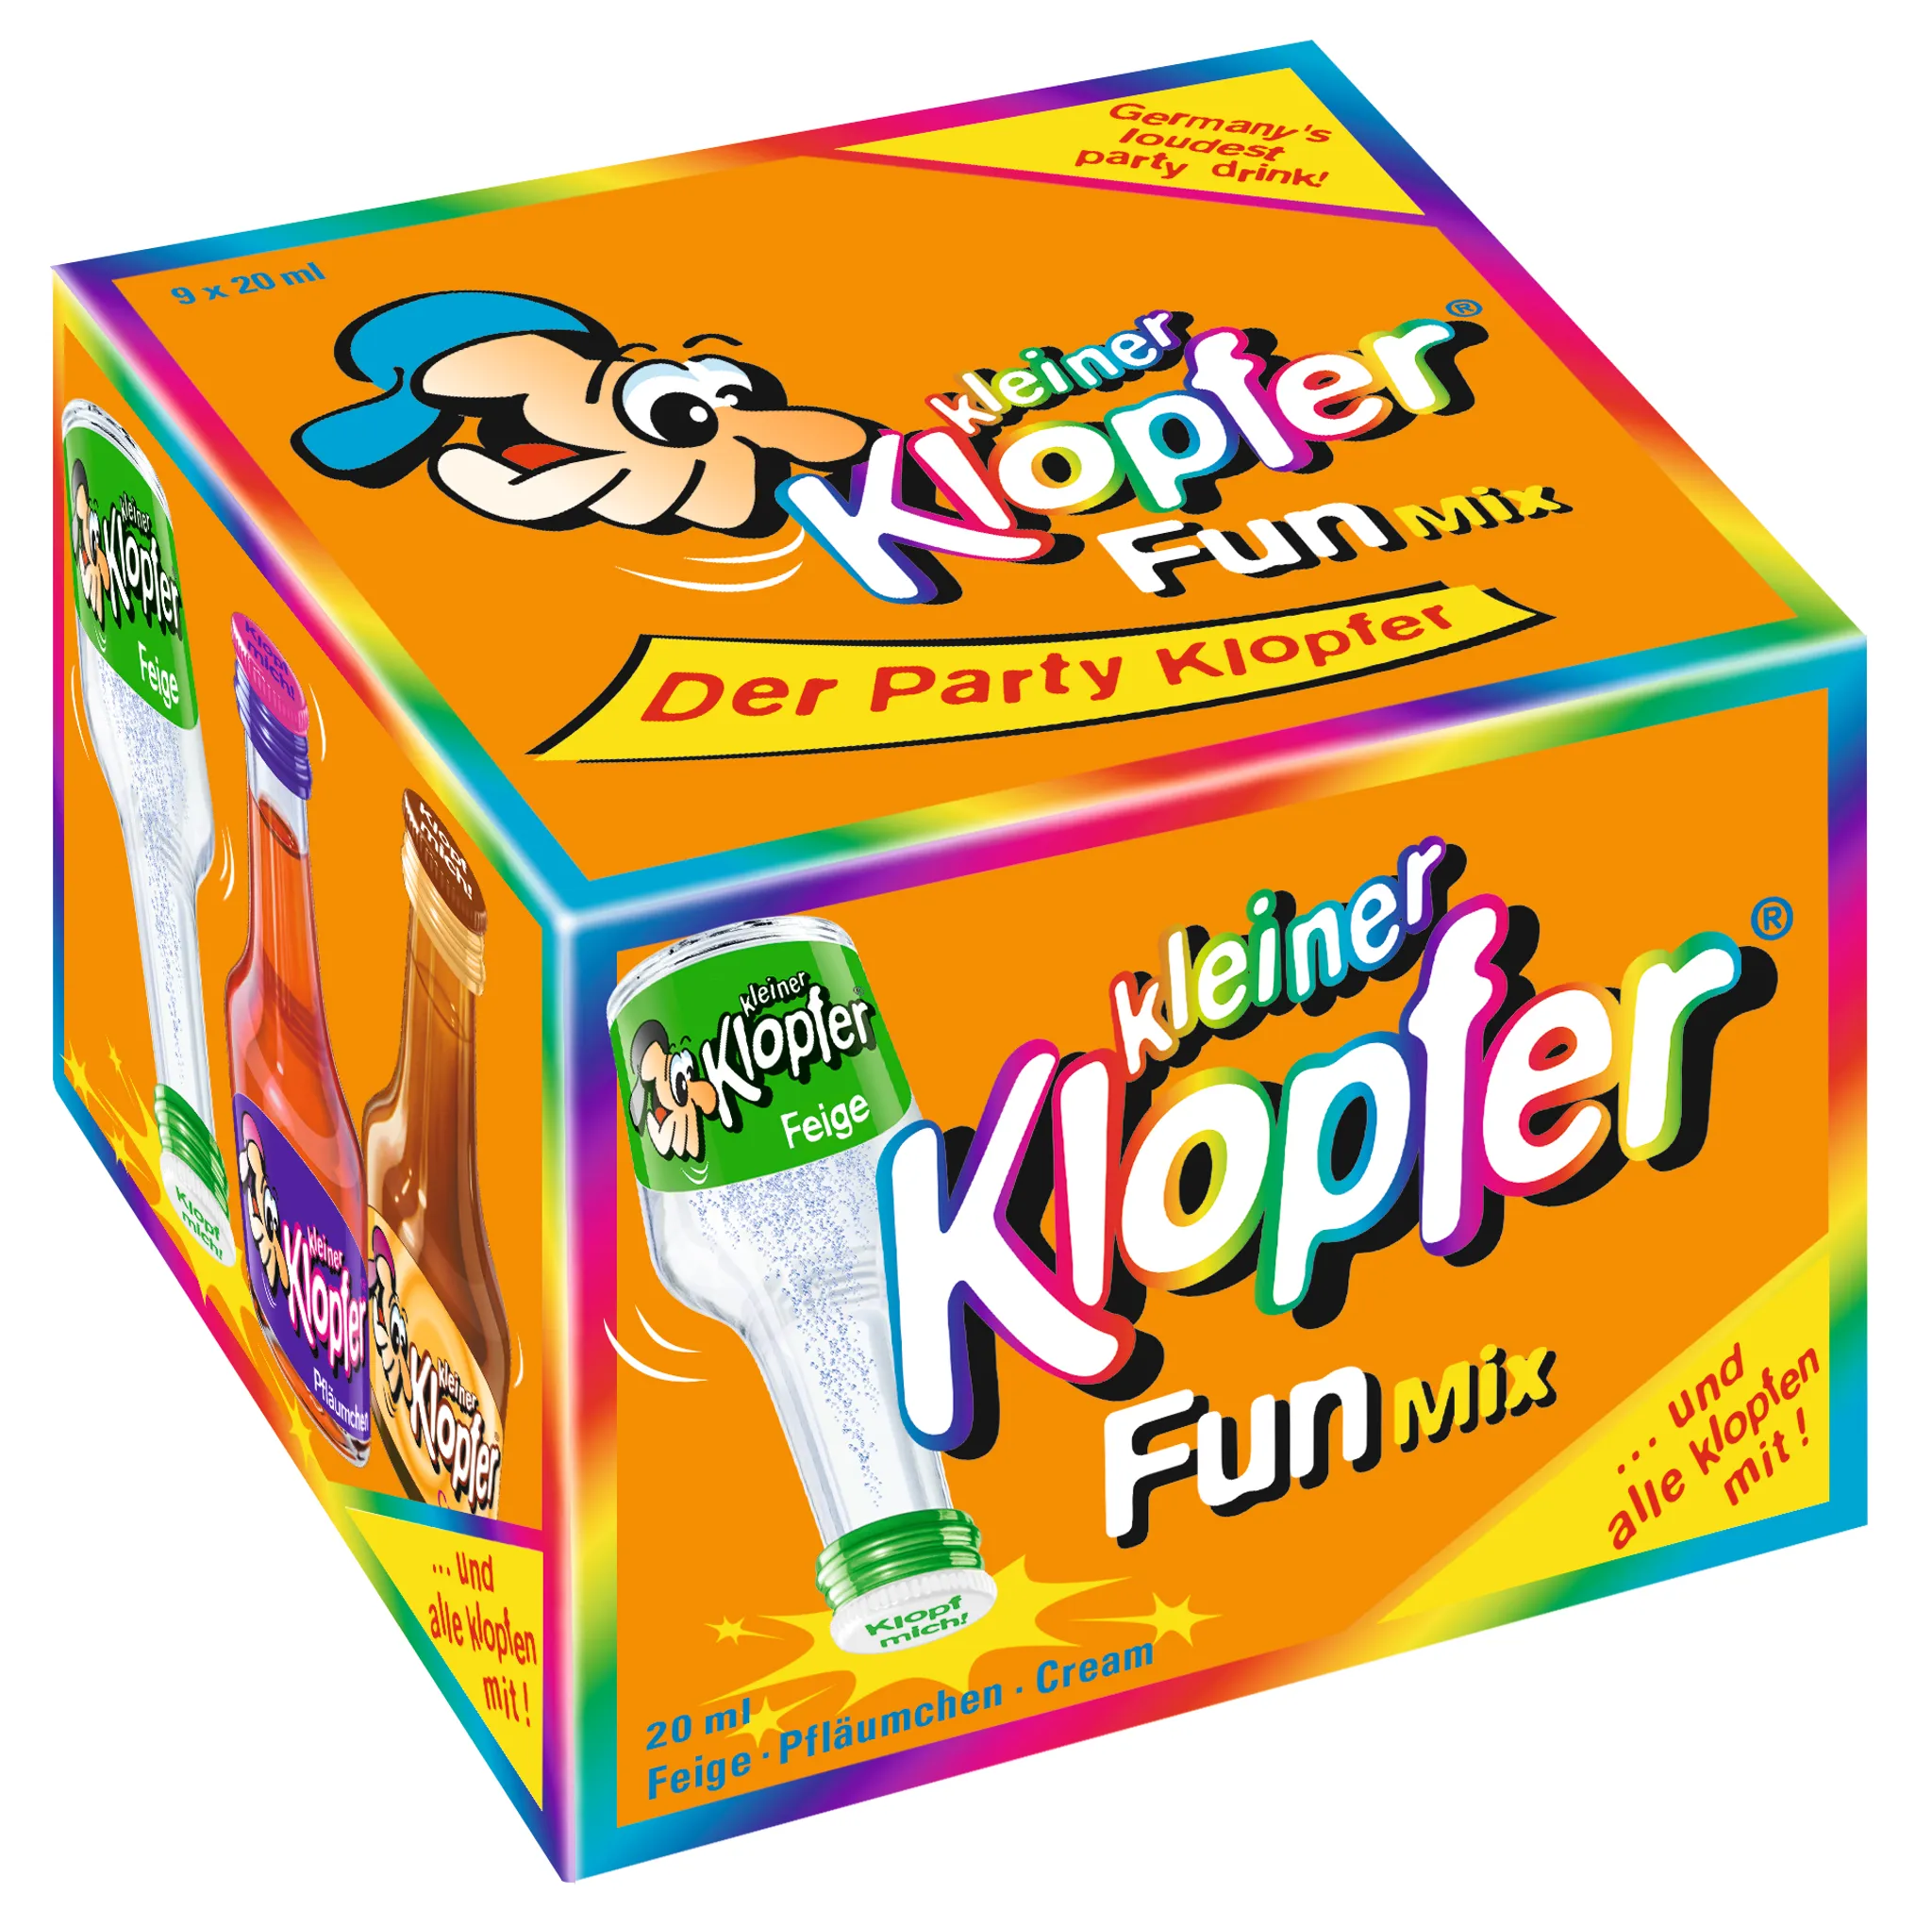 Kleiner Klopfer Fun 25 x 20 ml | Kaufland.de